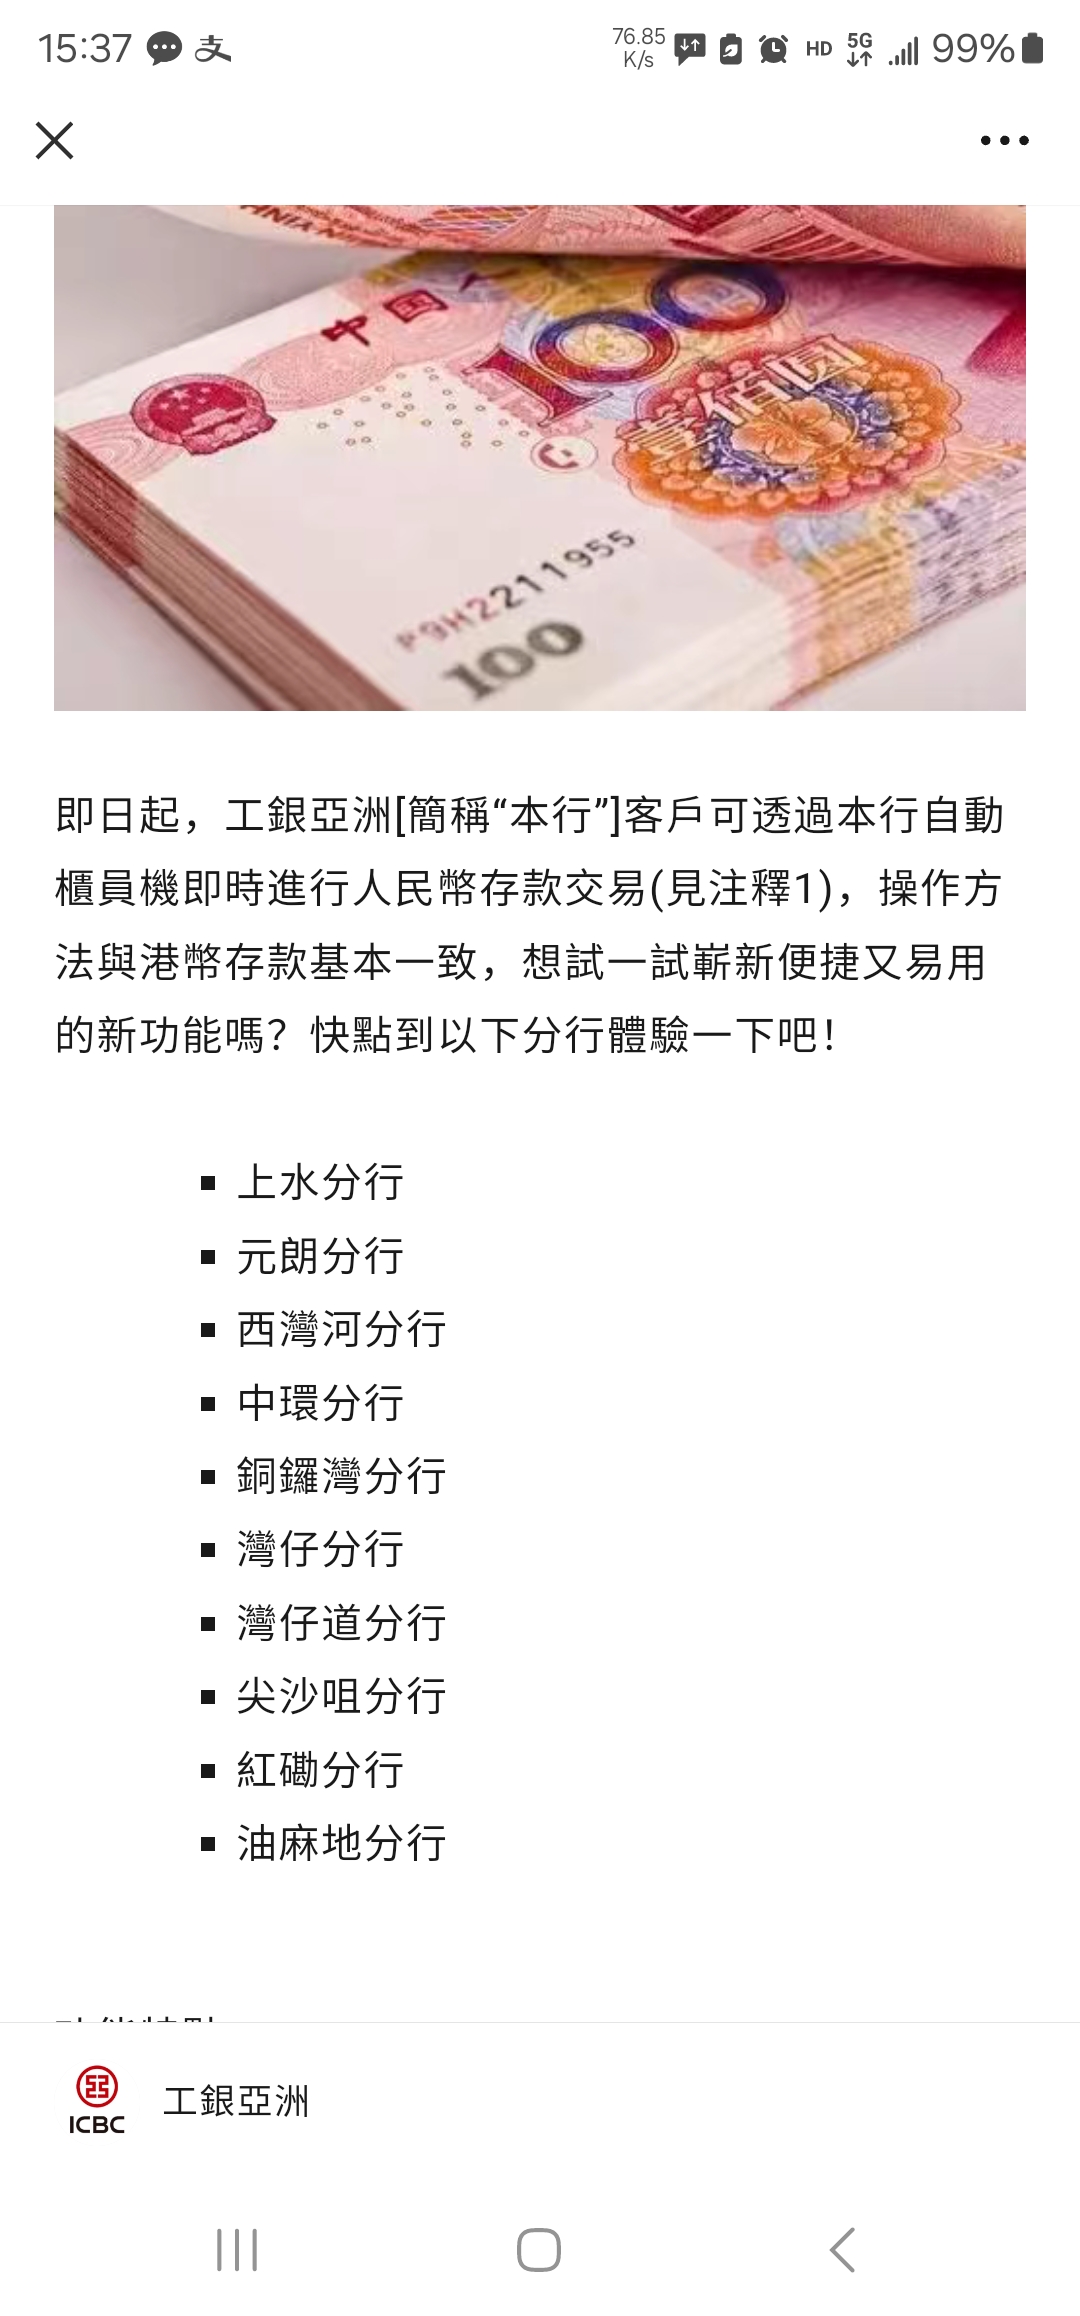 内地见证开户的工银亚洲无法在香港的ATM存RMB